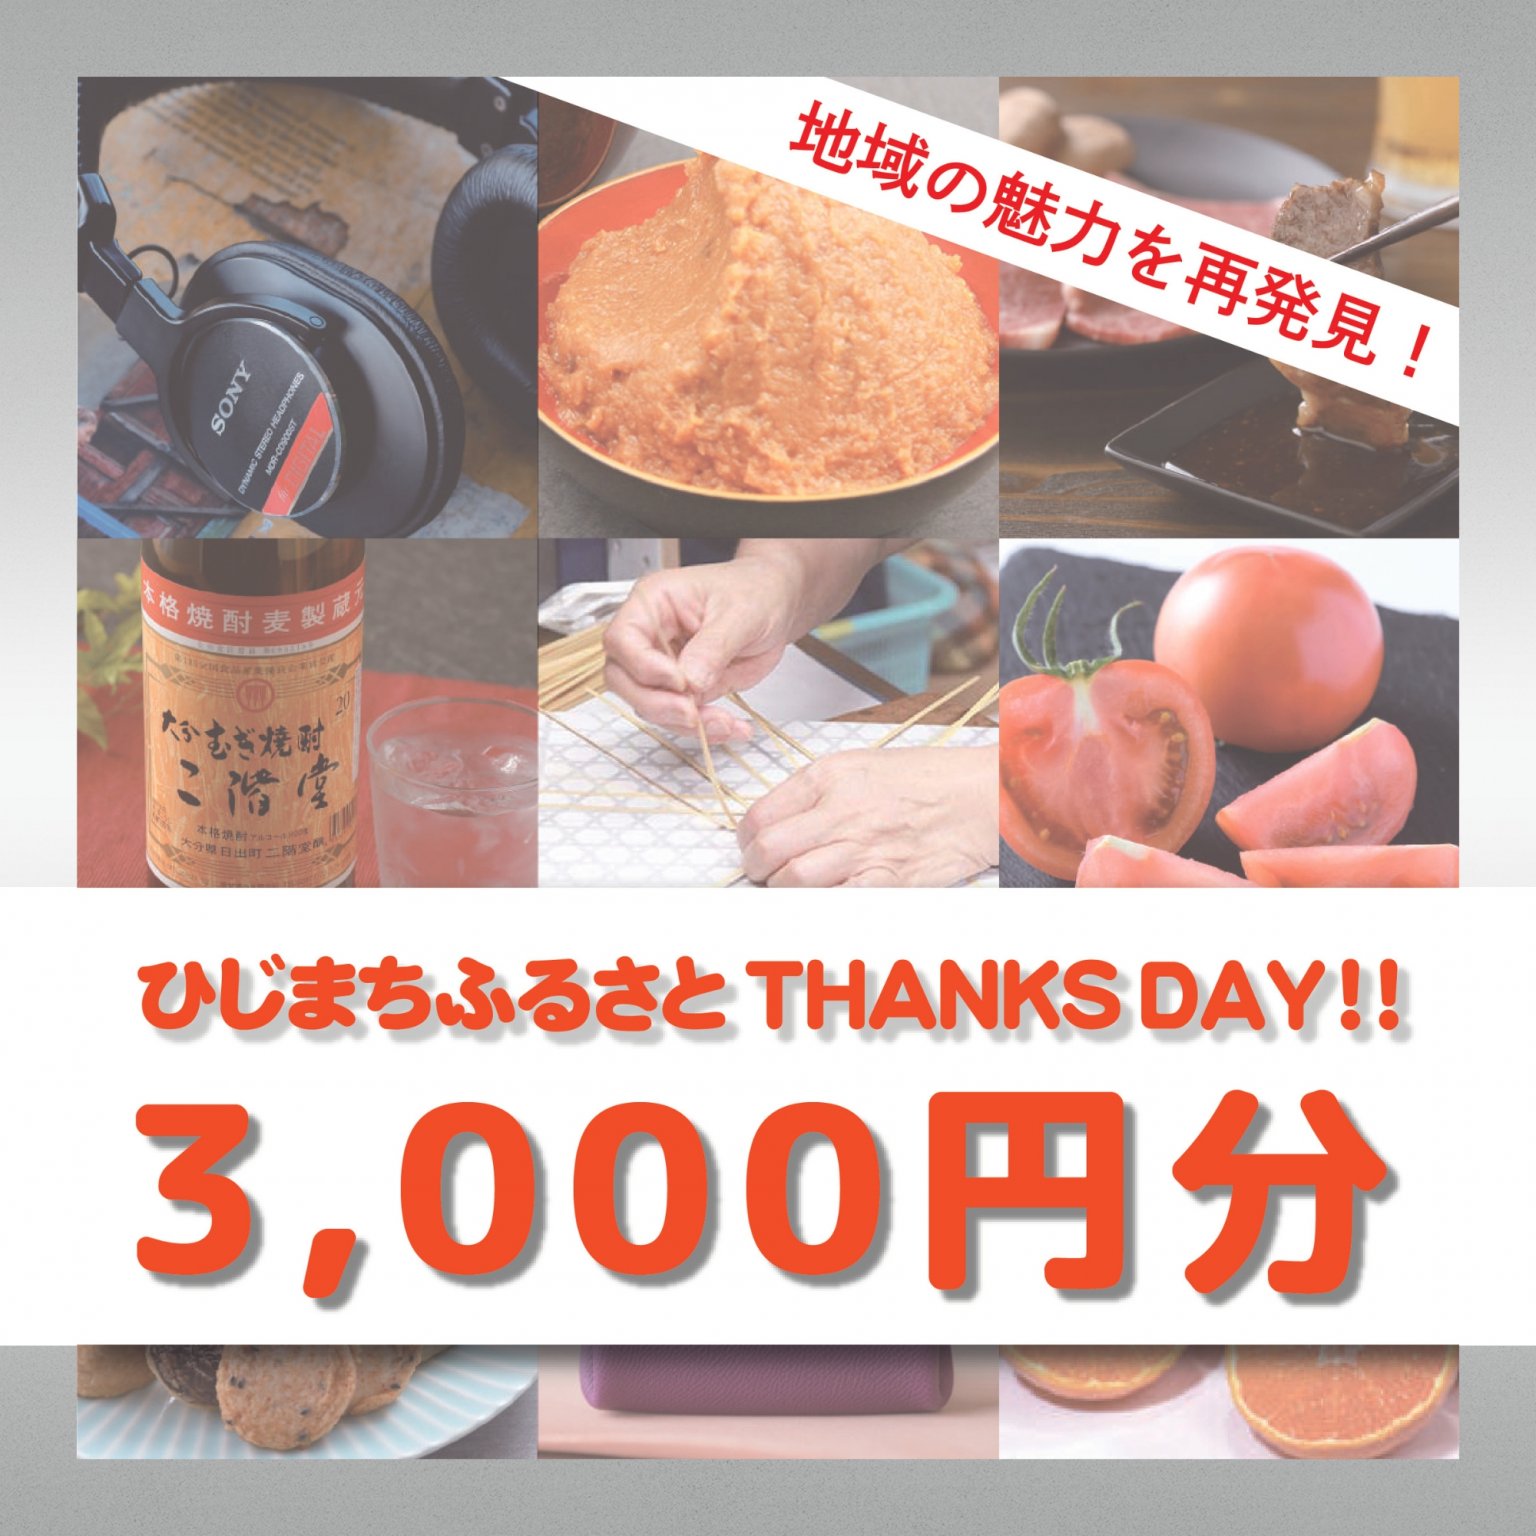 【3,000円分】ひじまちふるさとTHANKS DAY!!【3/26開催】専用チケット